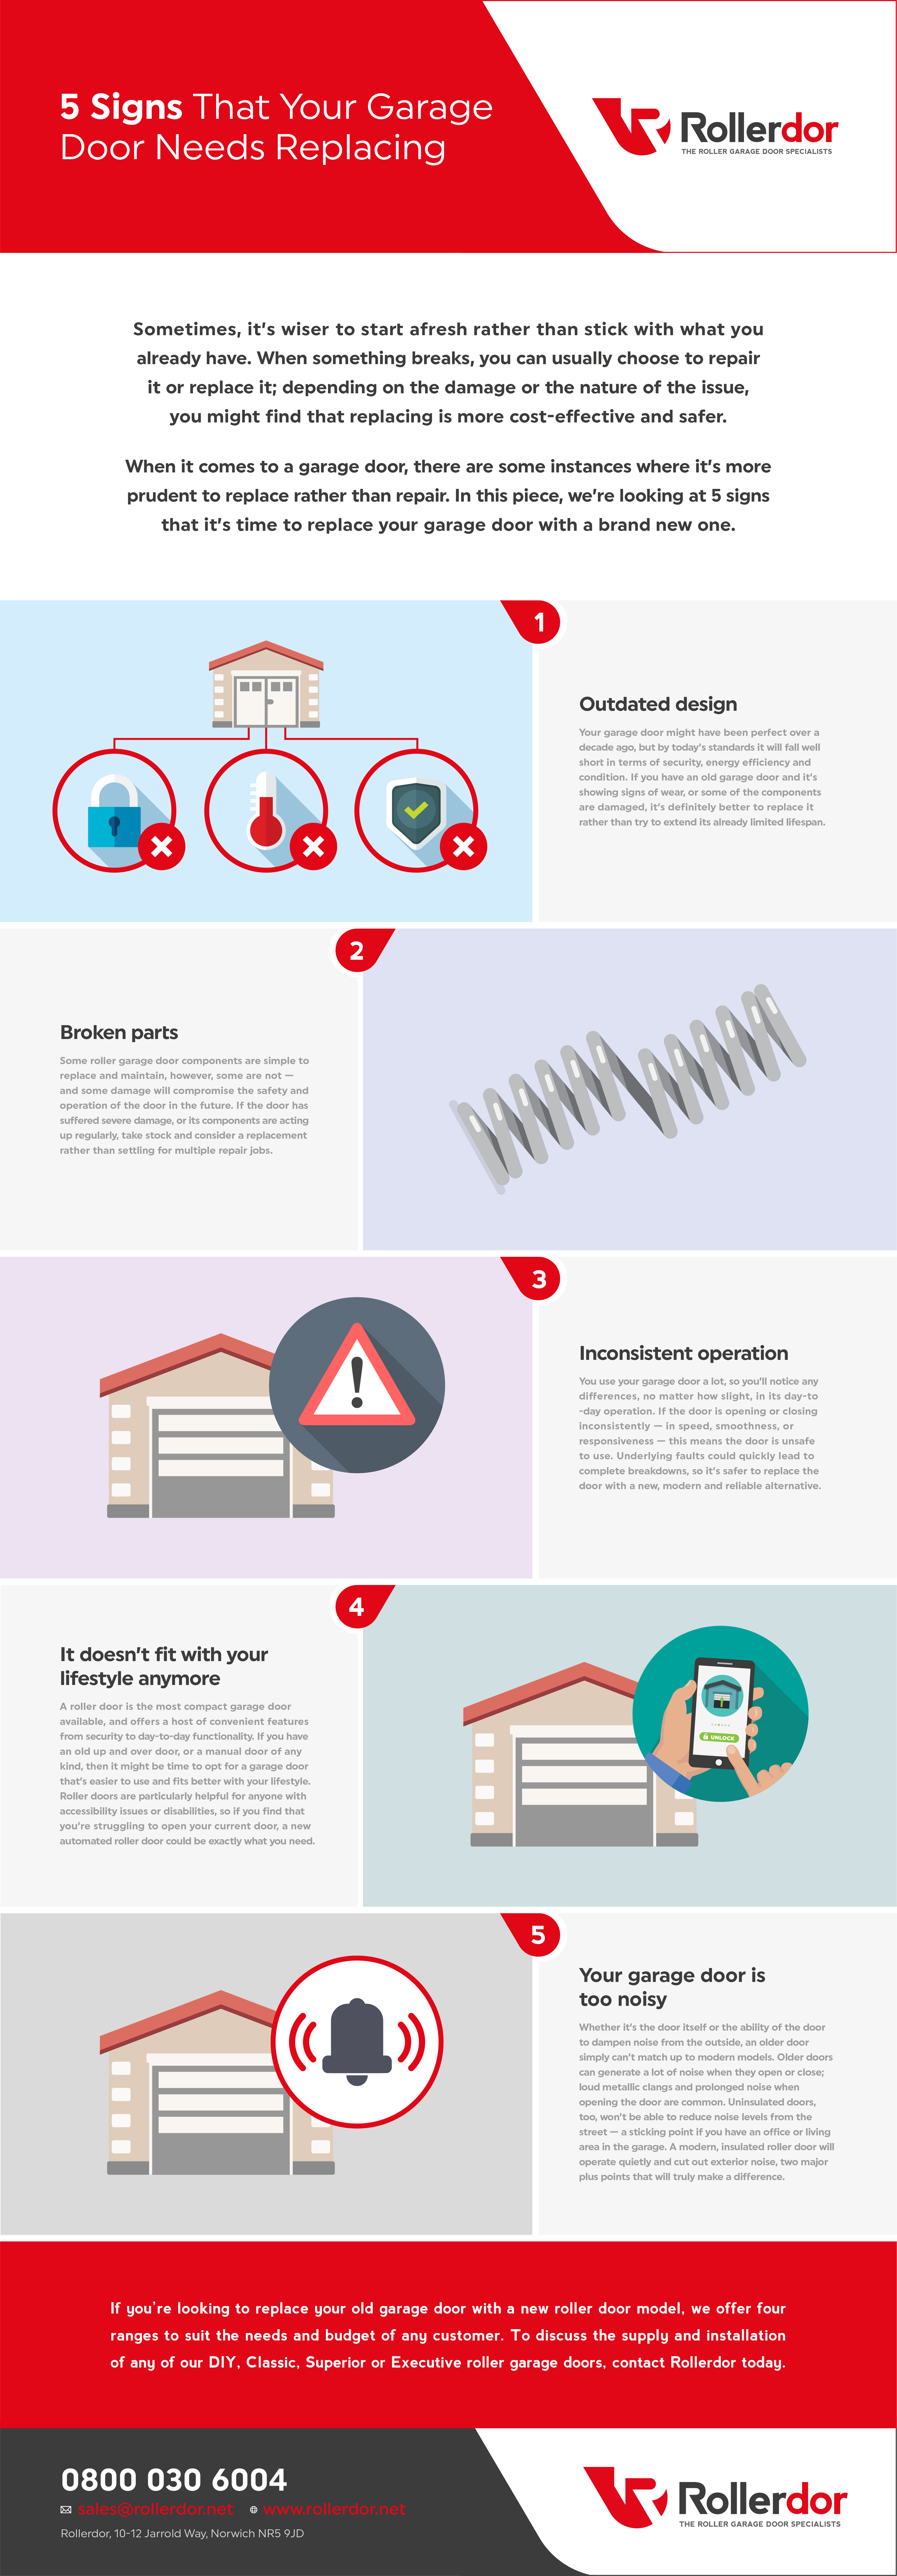 5 signs that your garage door needs replacing infographic